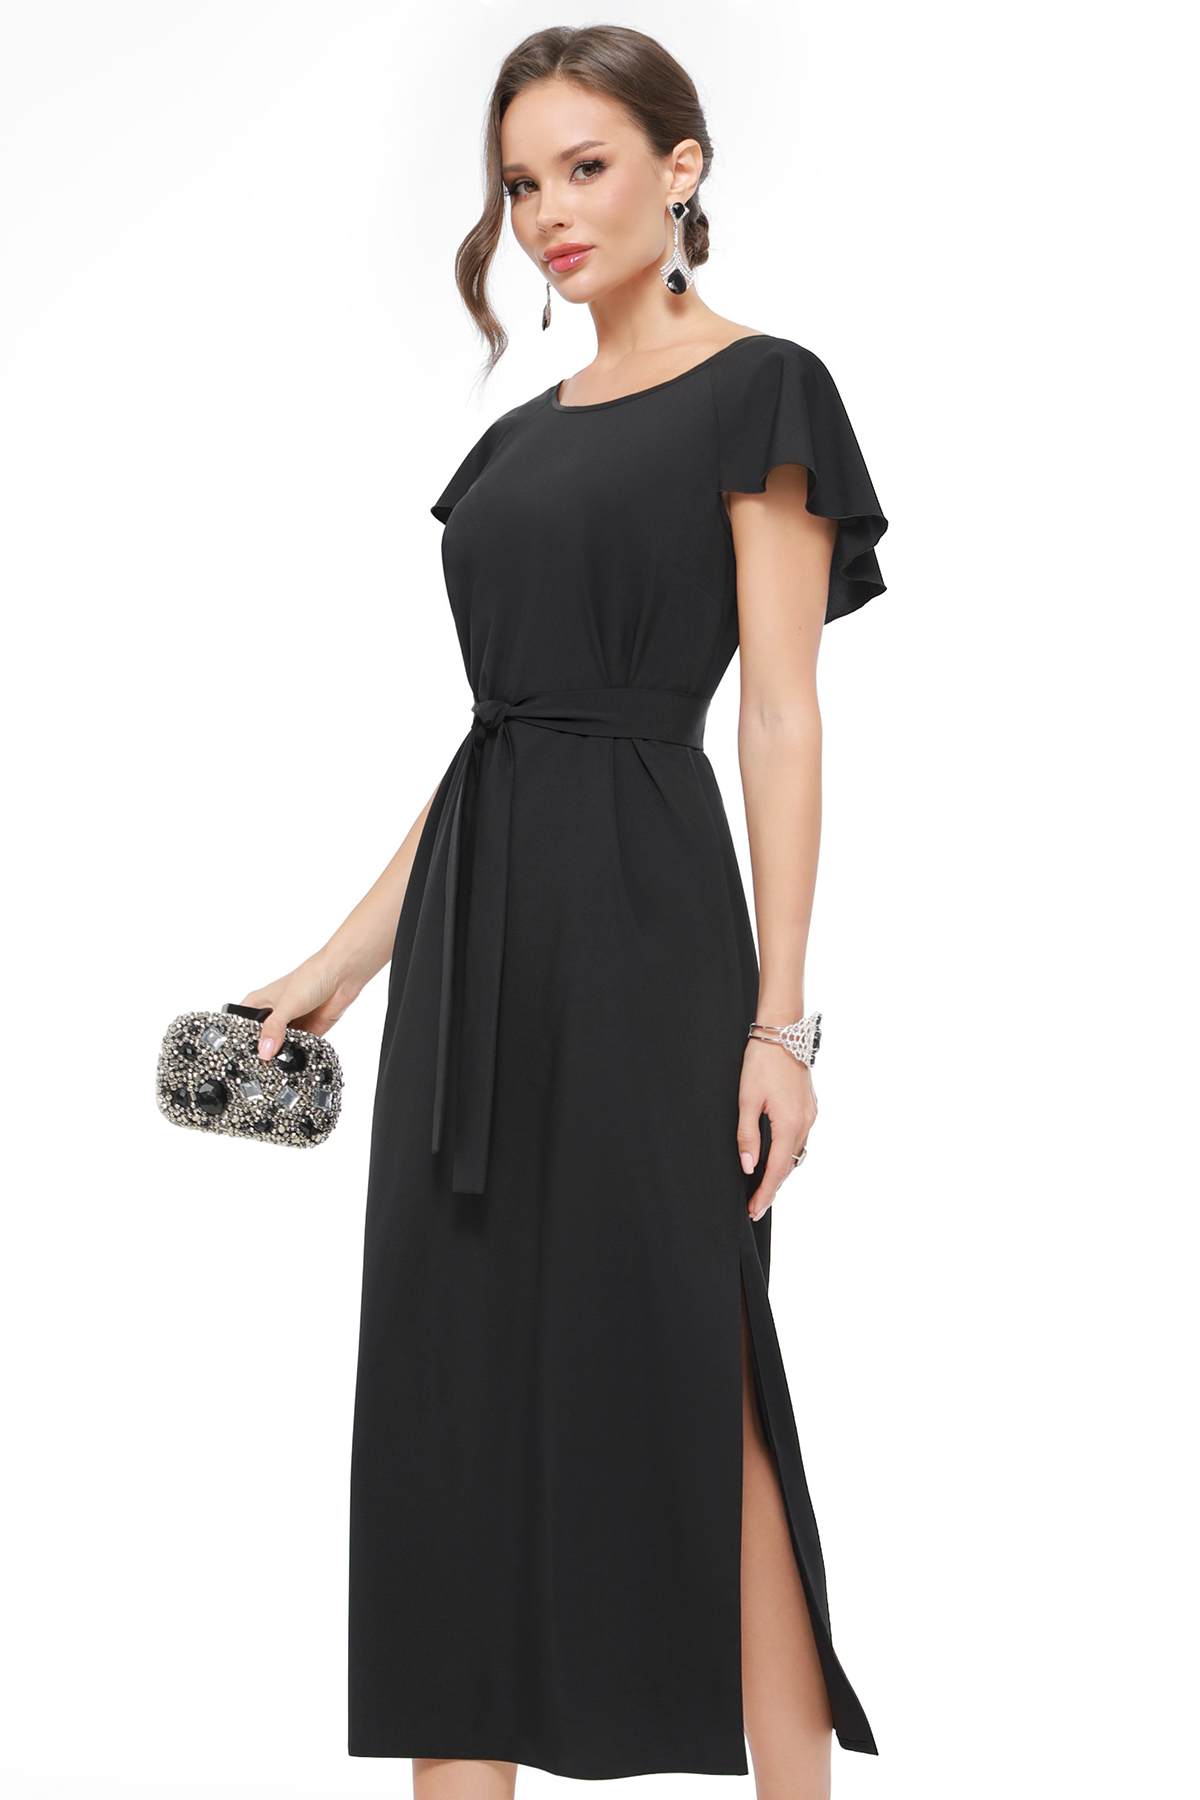 Платье женское DSTrend 0430 черное 54